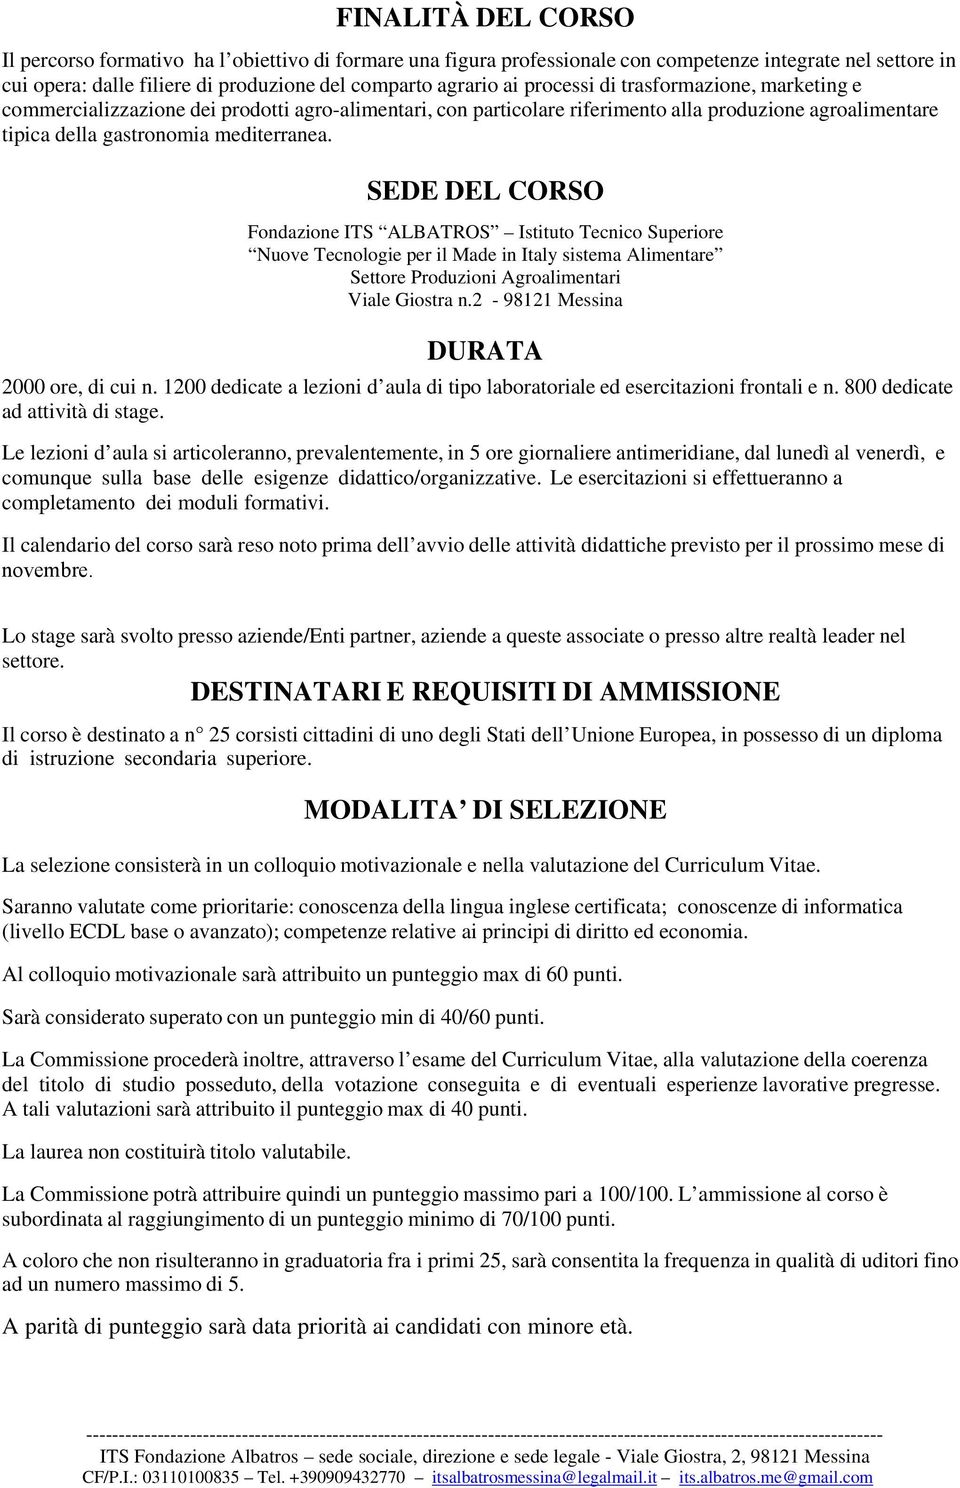 SEDE DEL CORSO Fondazione ITS ALBATROS Istituto Tecnico Superiore Nuove Tecnologie per il Made in Italy sistema Alimentare Viale Giostra n.2-98121 Messina DURATA 2000 ore, di cui n.